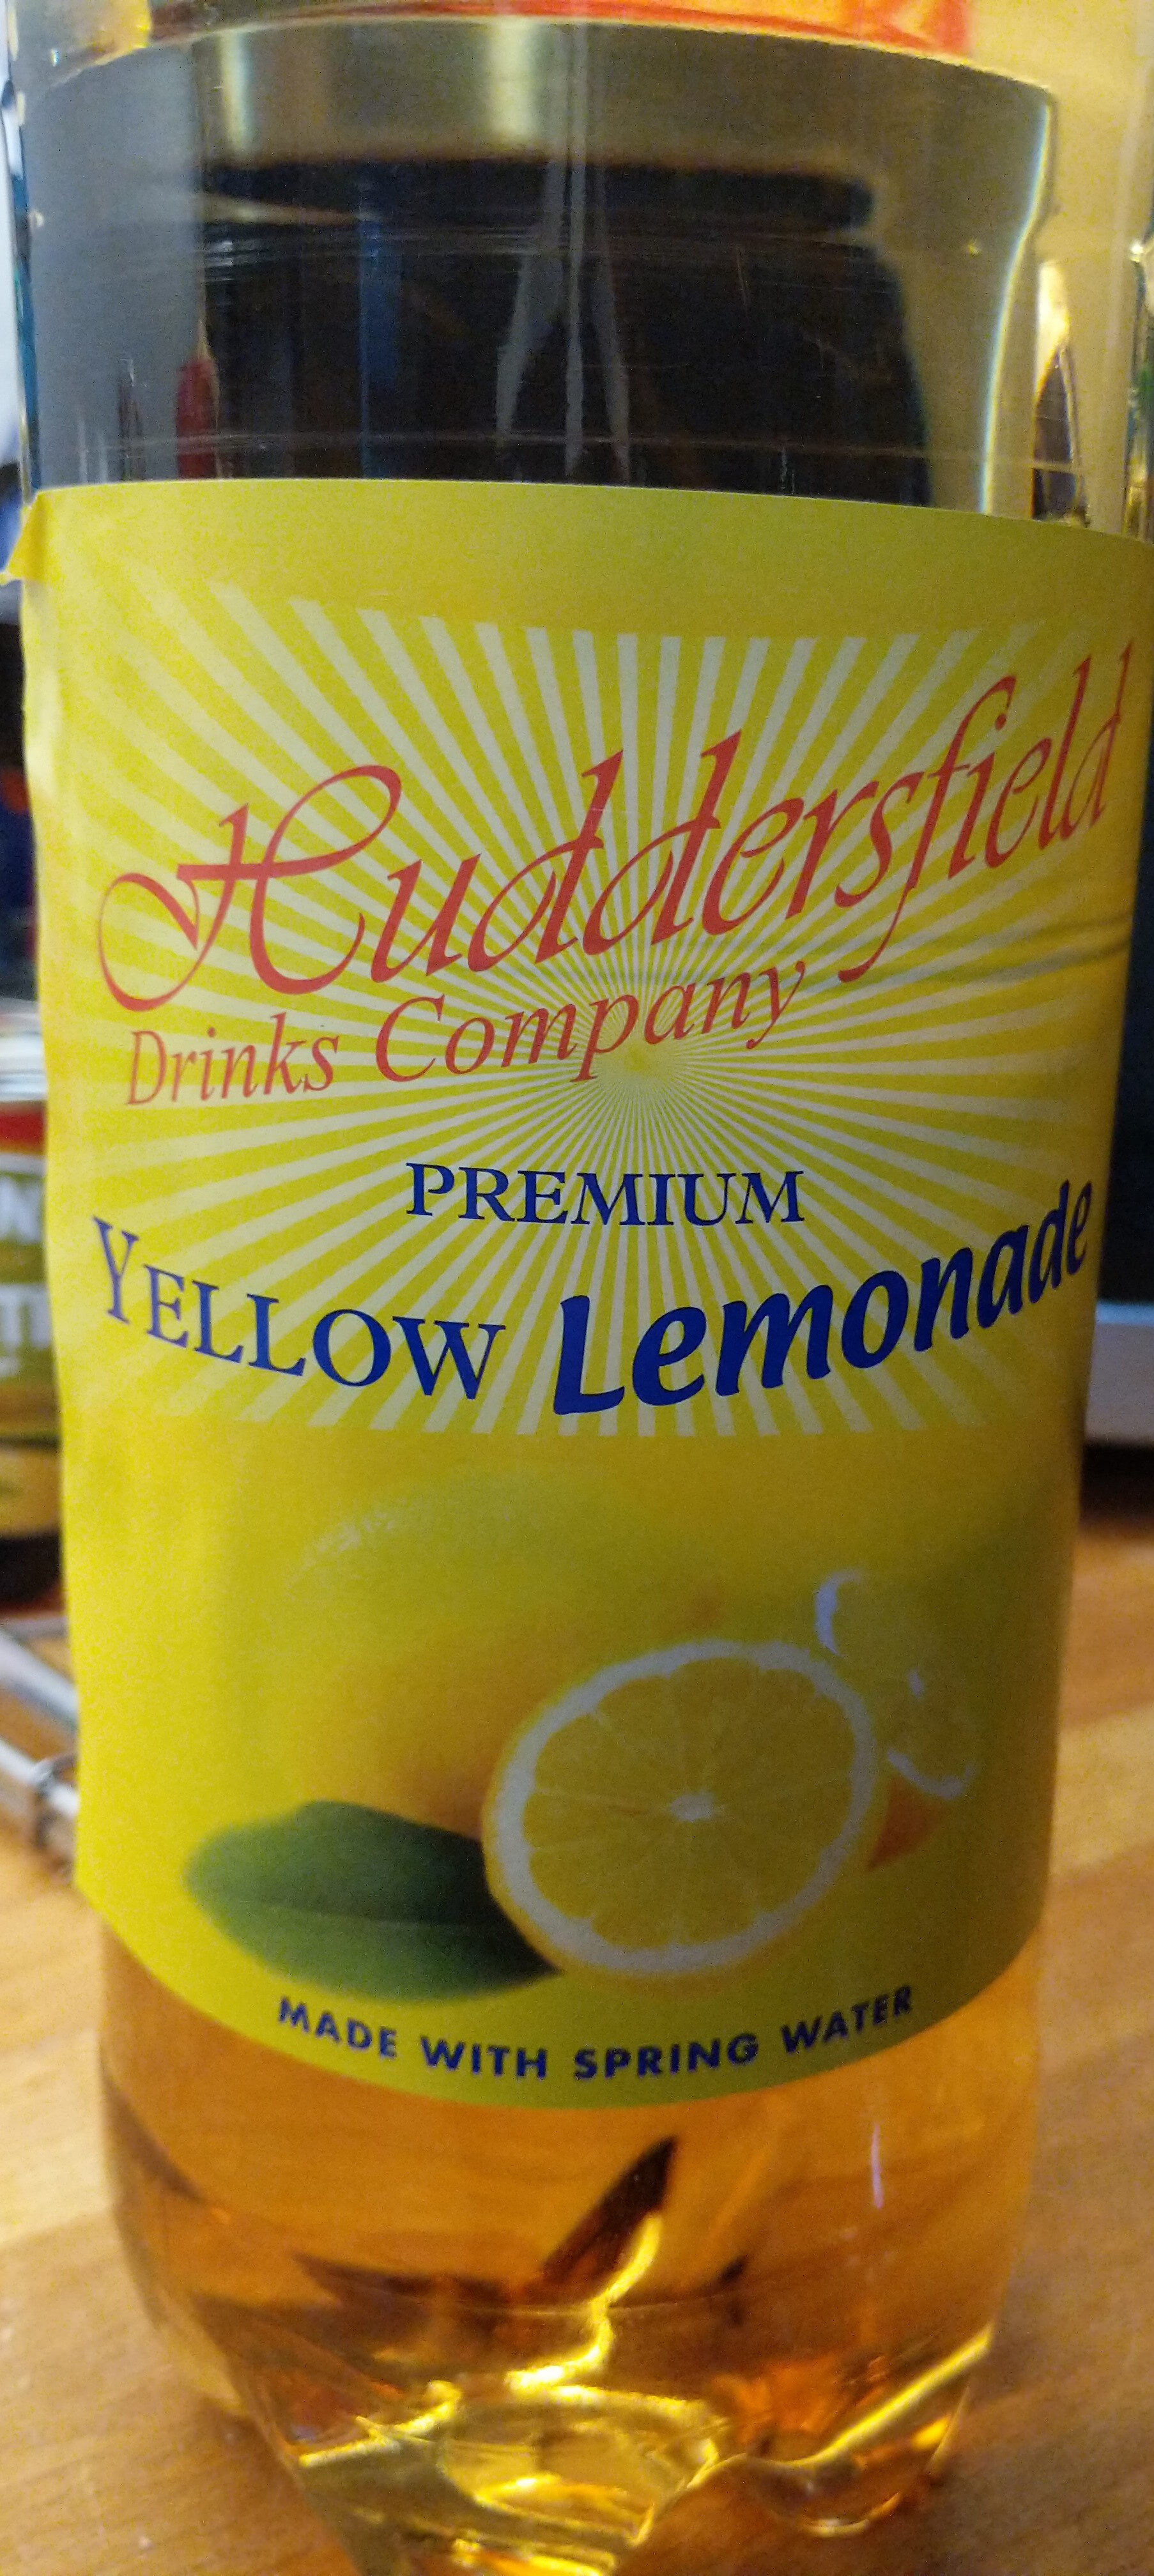 Premium Yellow Lemonade - Producto - en